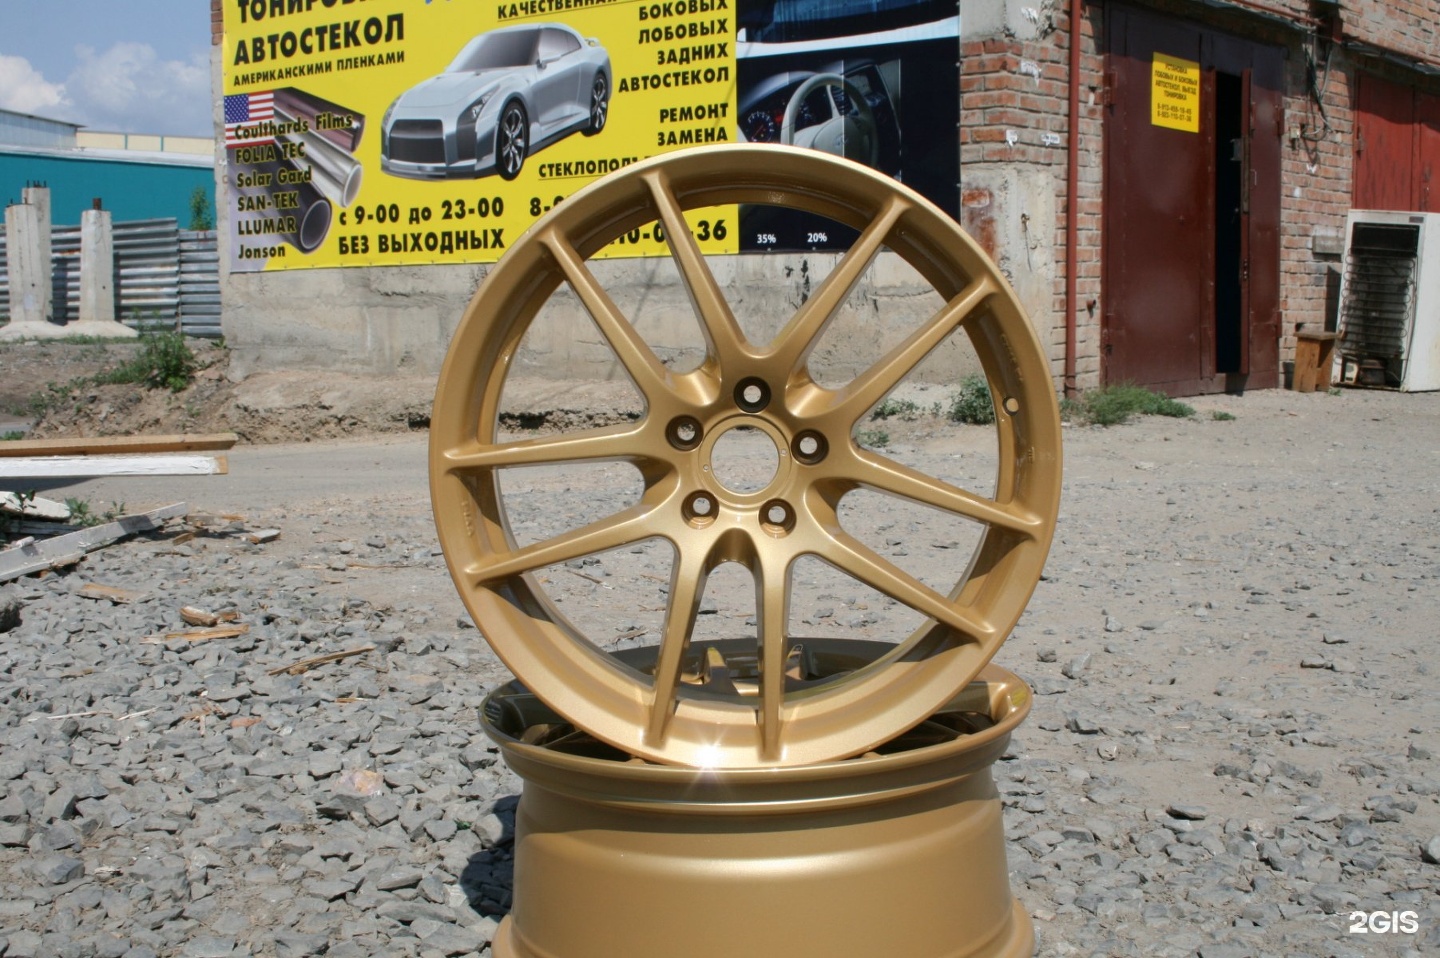 Реклама по реставрации дисков. Биг Вилс Новосибирск колеса.